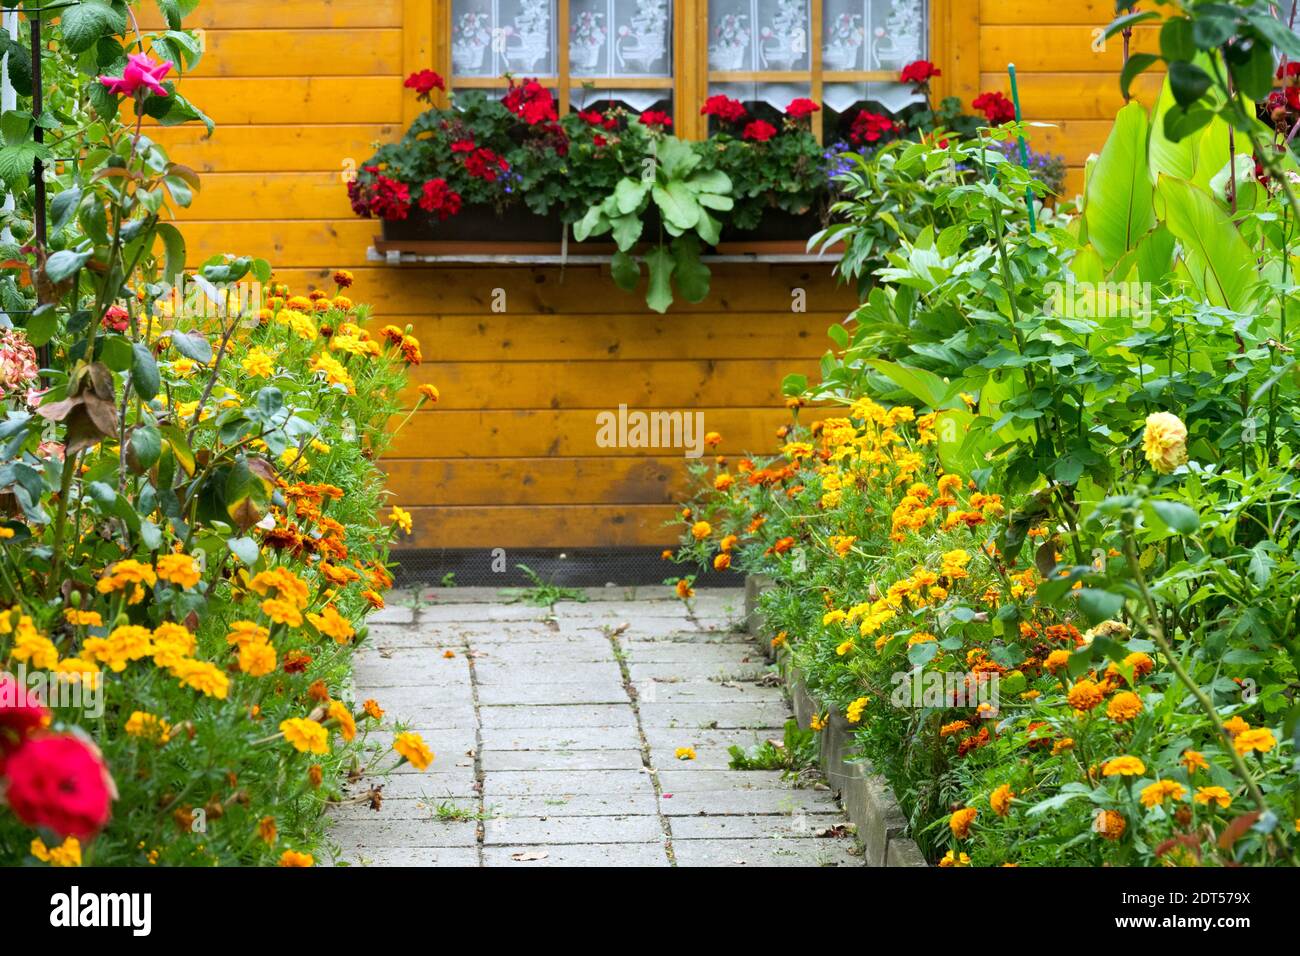 Gartenhaus mit Fensterläden in den Fenstern Deutschland Vorstadt Zuteilung Garten Gartenhaus Blumen Stockfoto